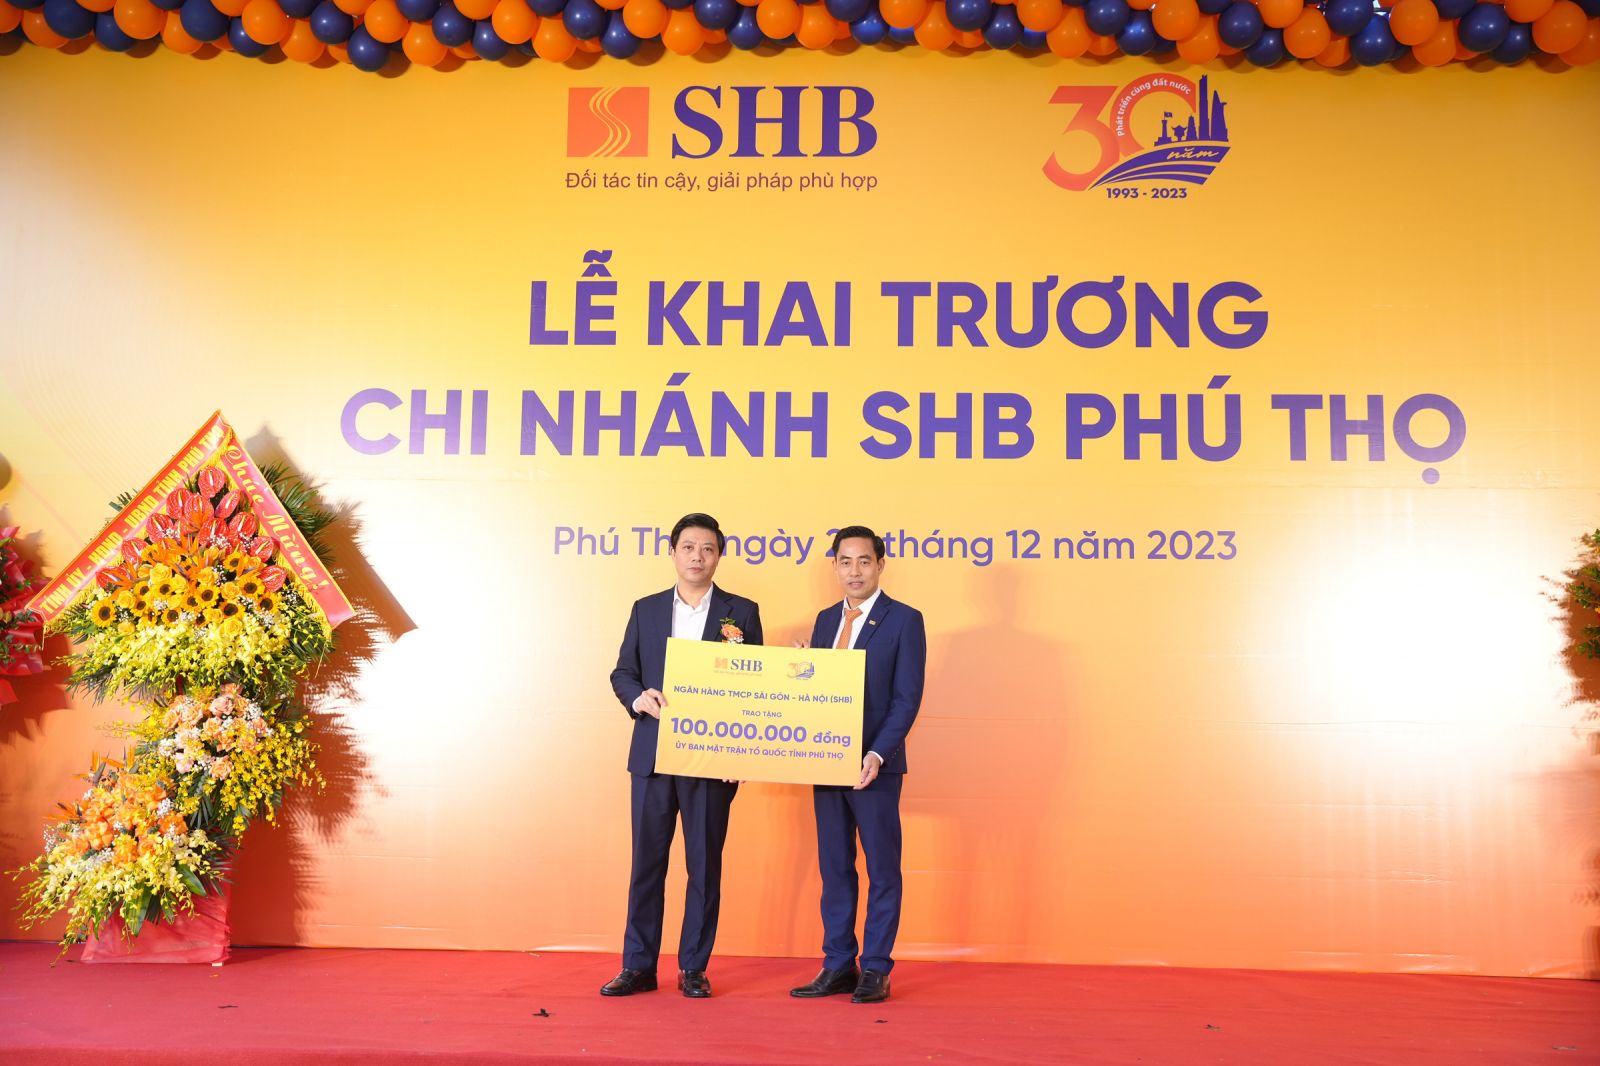 Giám đốc SHB Bắc Giang và Giám đốc SHB Phú Thọ đại diện Ngân hàng trao tặng 100 triệu đồng cho Ủy ban Mặt trận Tổ quốc trên địa bàn mỗi tỉnh